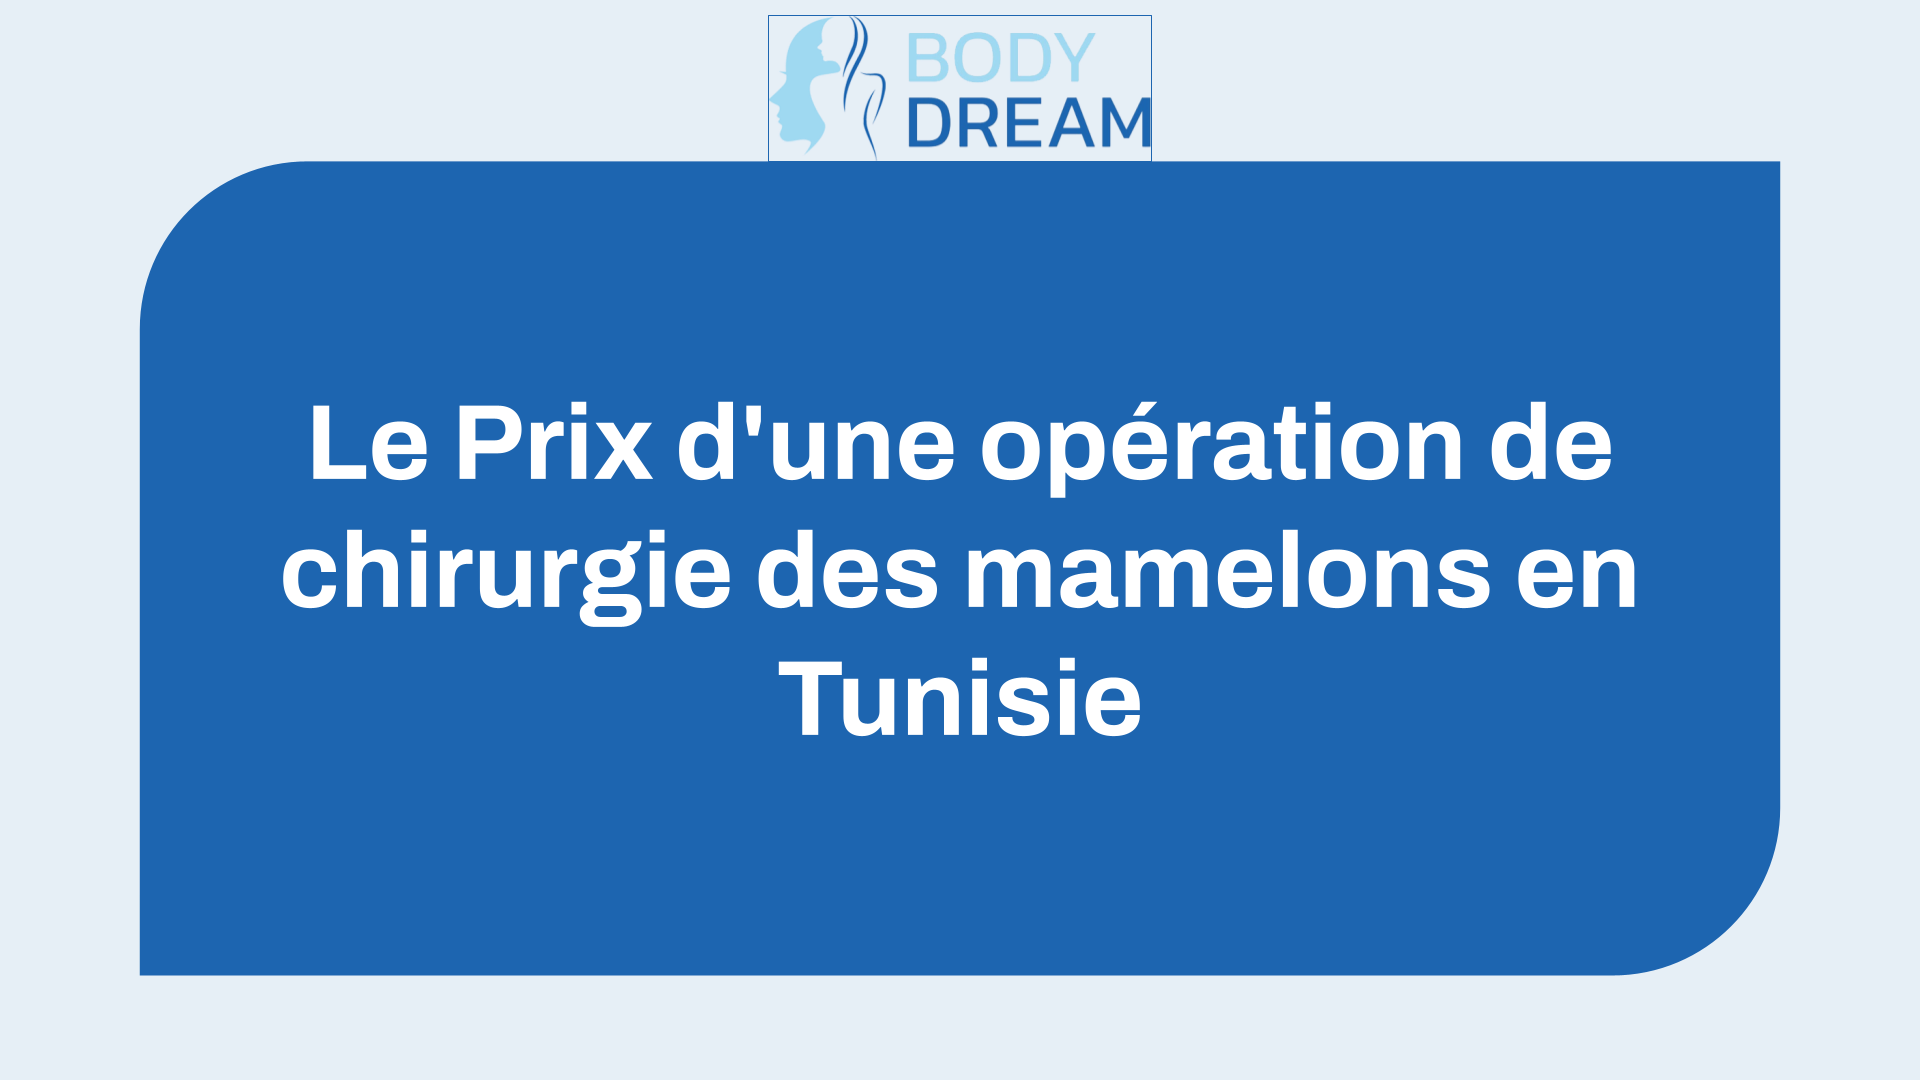 Le Prix d'une opération de chirurgie des mamelons en Tunisie (le Tarif de l'intervention).